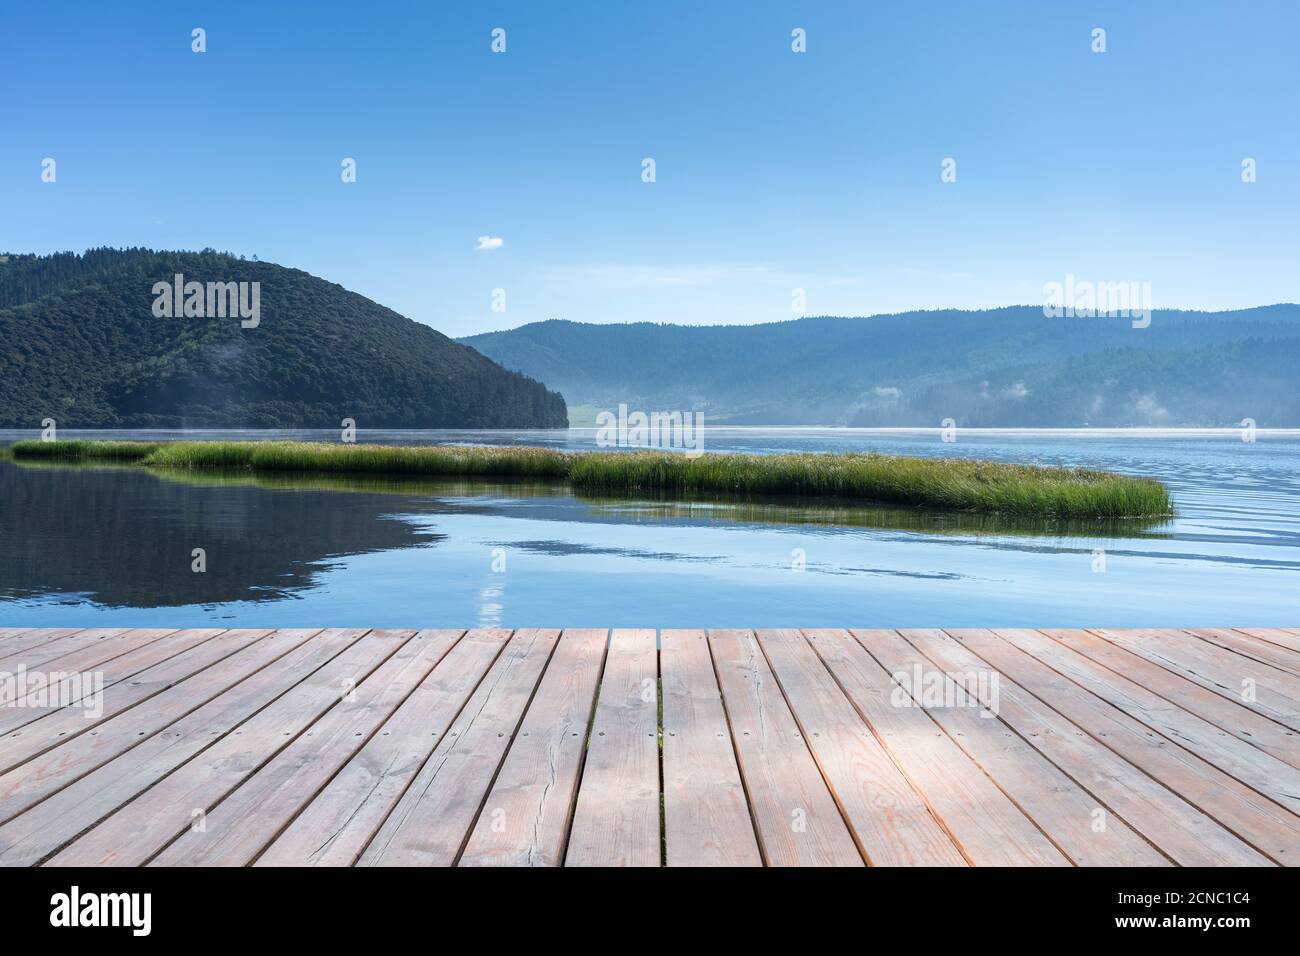 beautiful alpine lake Stock Photo